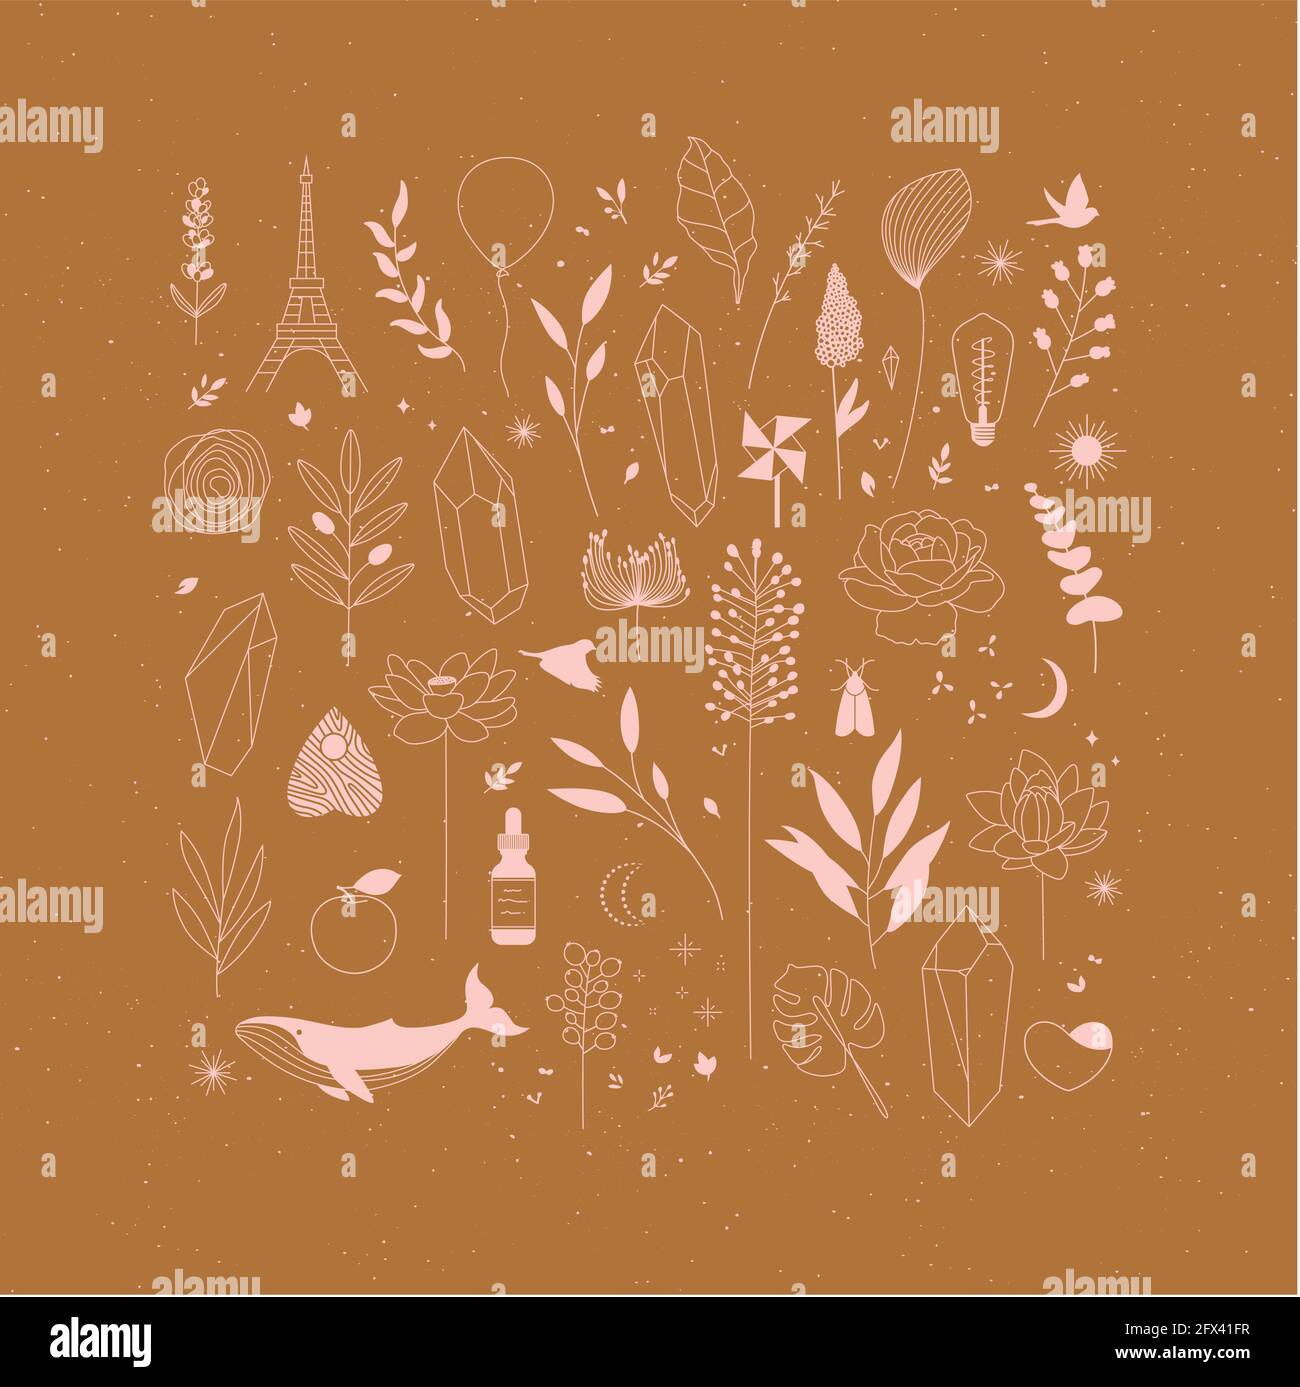 Set aus verschiedenen dekorativen Elementen mit Zweigen, Blumen, Tieren und verschiedenen Objekten auf Senf Hintergrund Zeichnung Stock Vektor